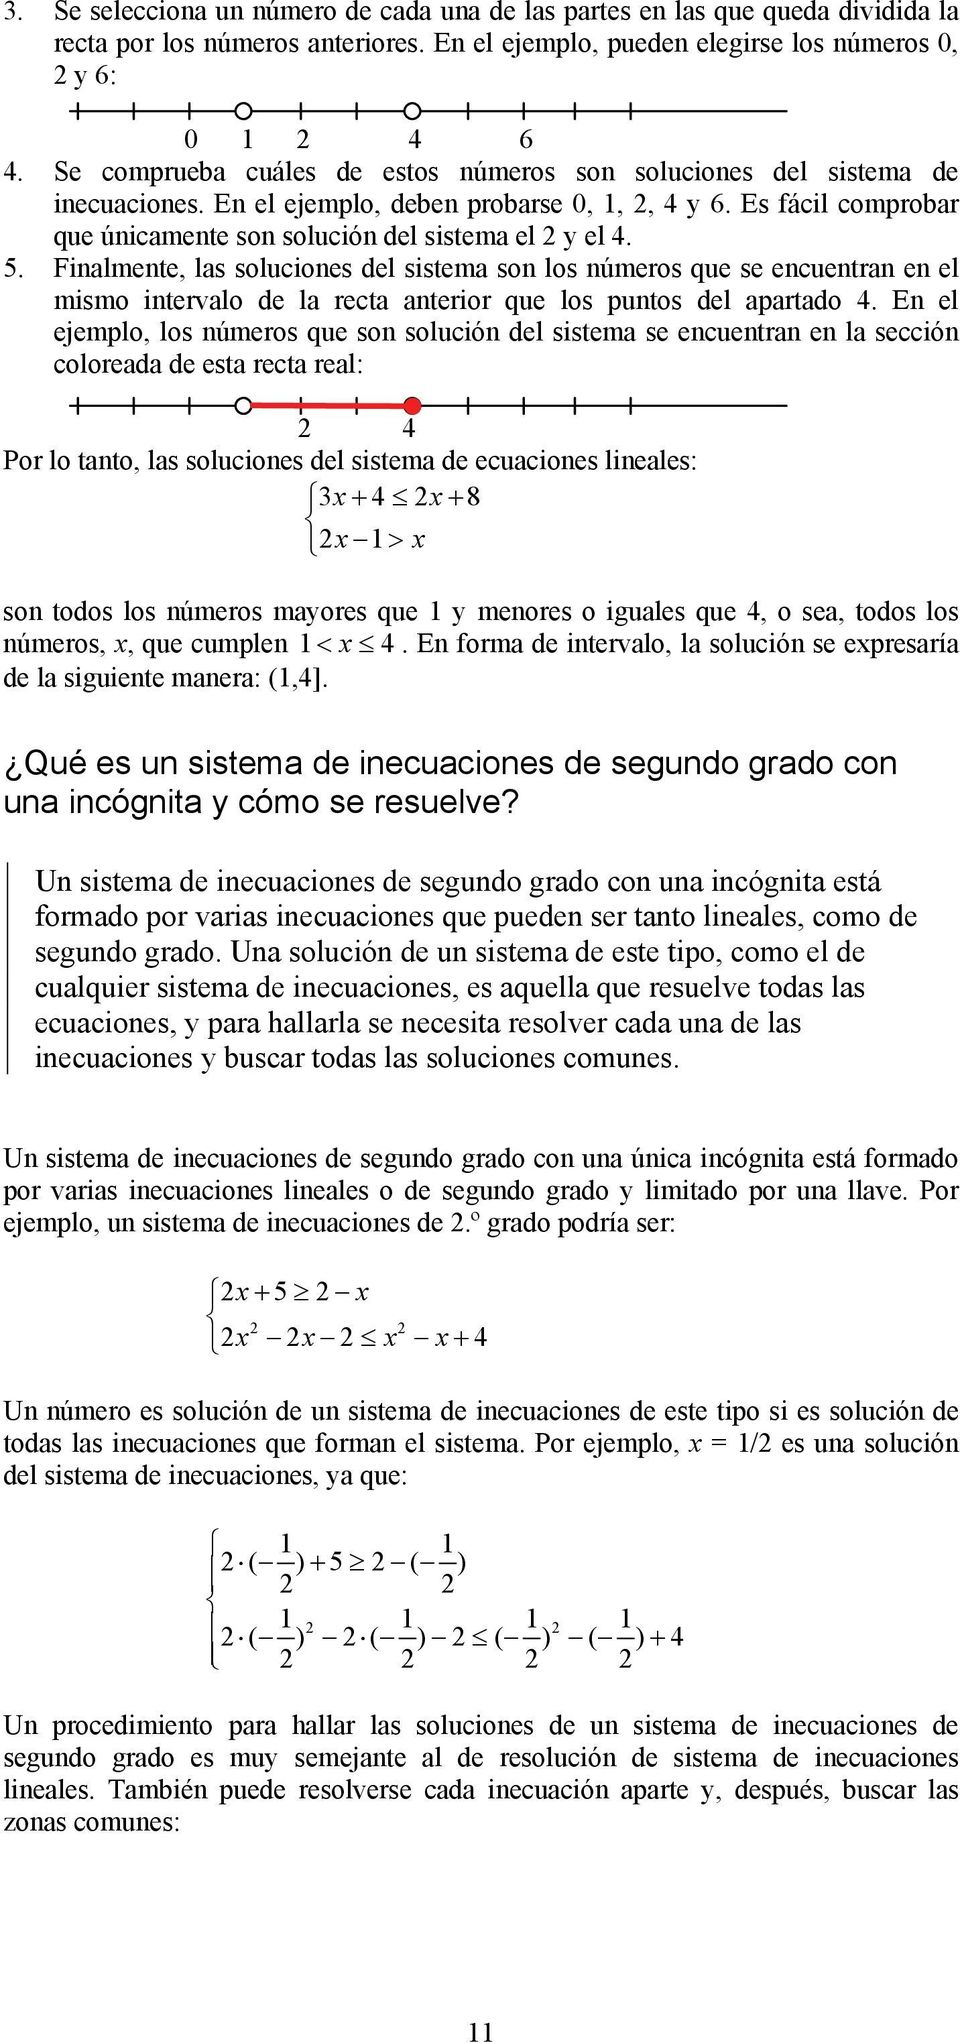 5. Finalmente, las soluciones del sistema son los números que se encuentran en el mismo intervalo de la recta anterior que los puntos del apartado 4.